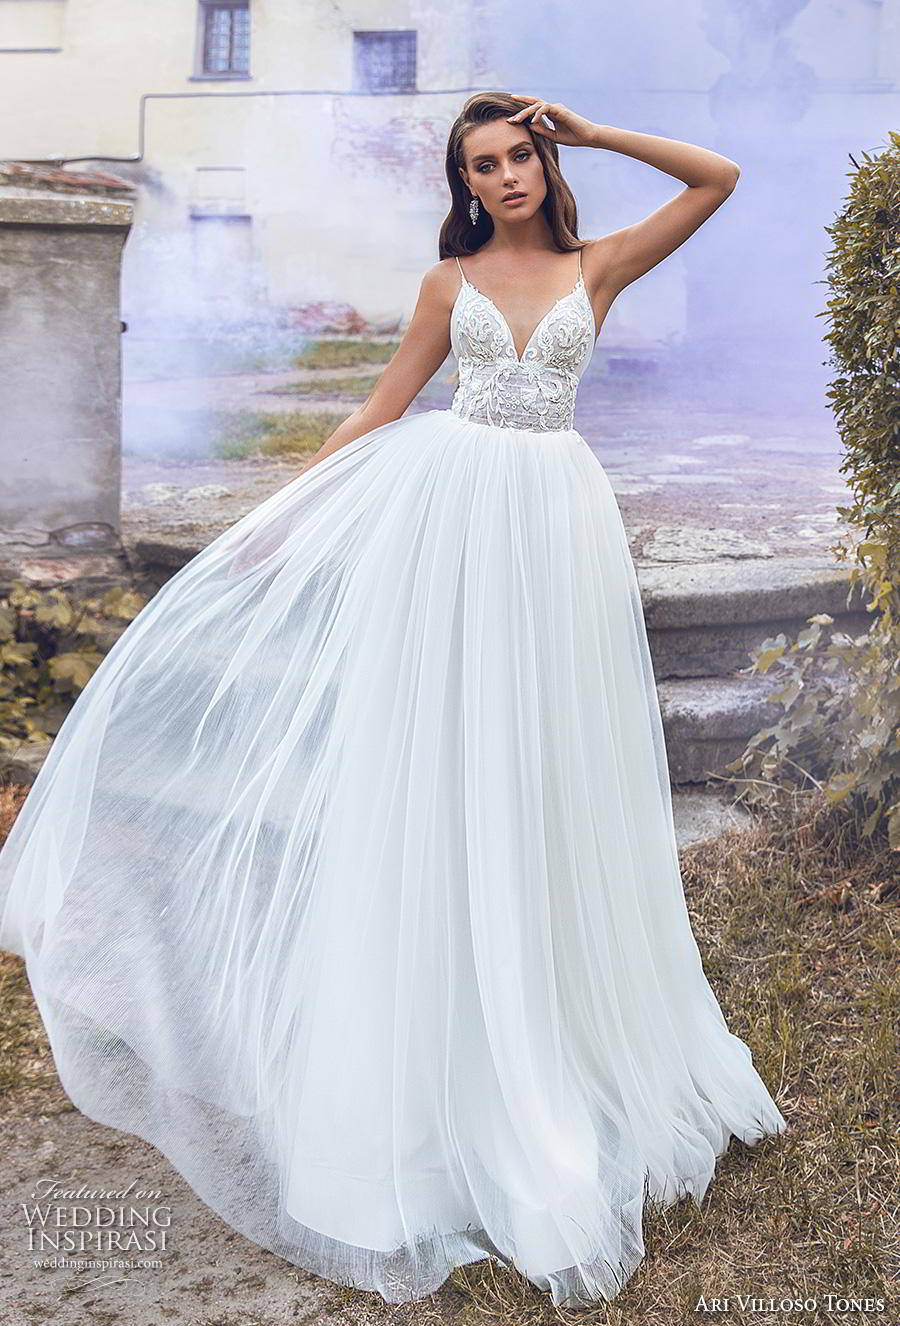 Ari Villoso Tones 2020  Wedding  Dresses   Allure  Bridal  